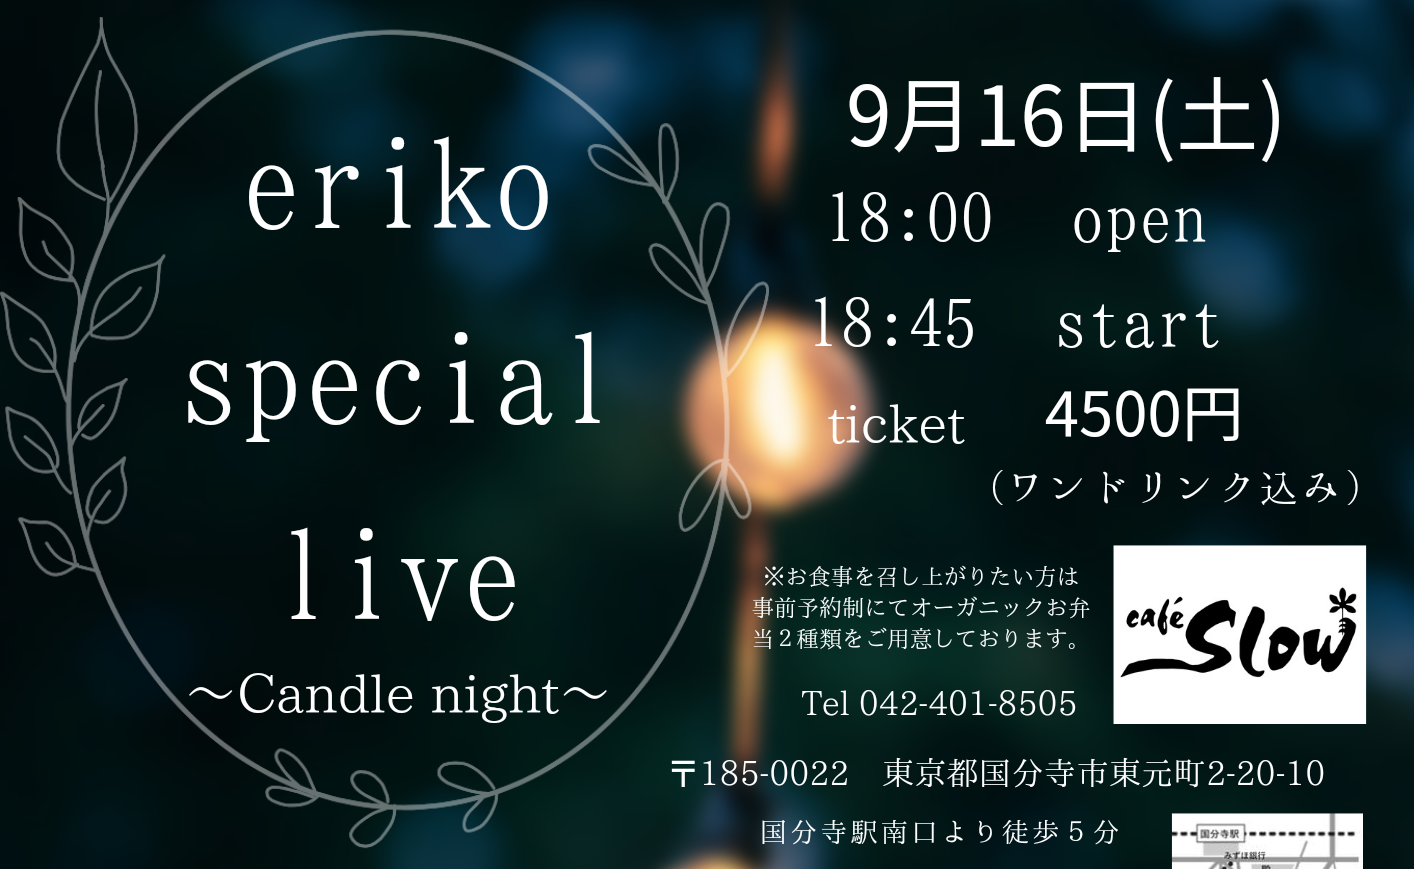 9/16(土) eriko special live～ candle night ～